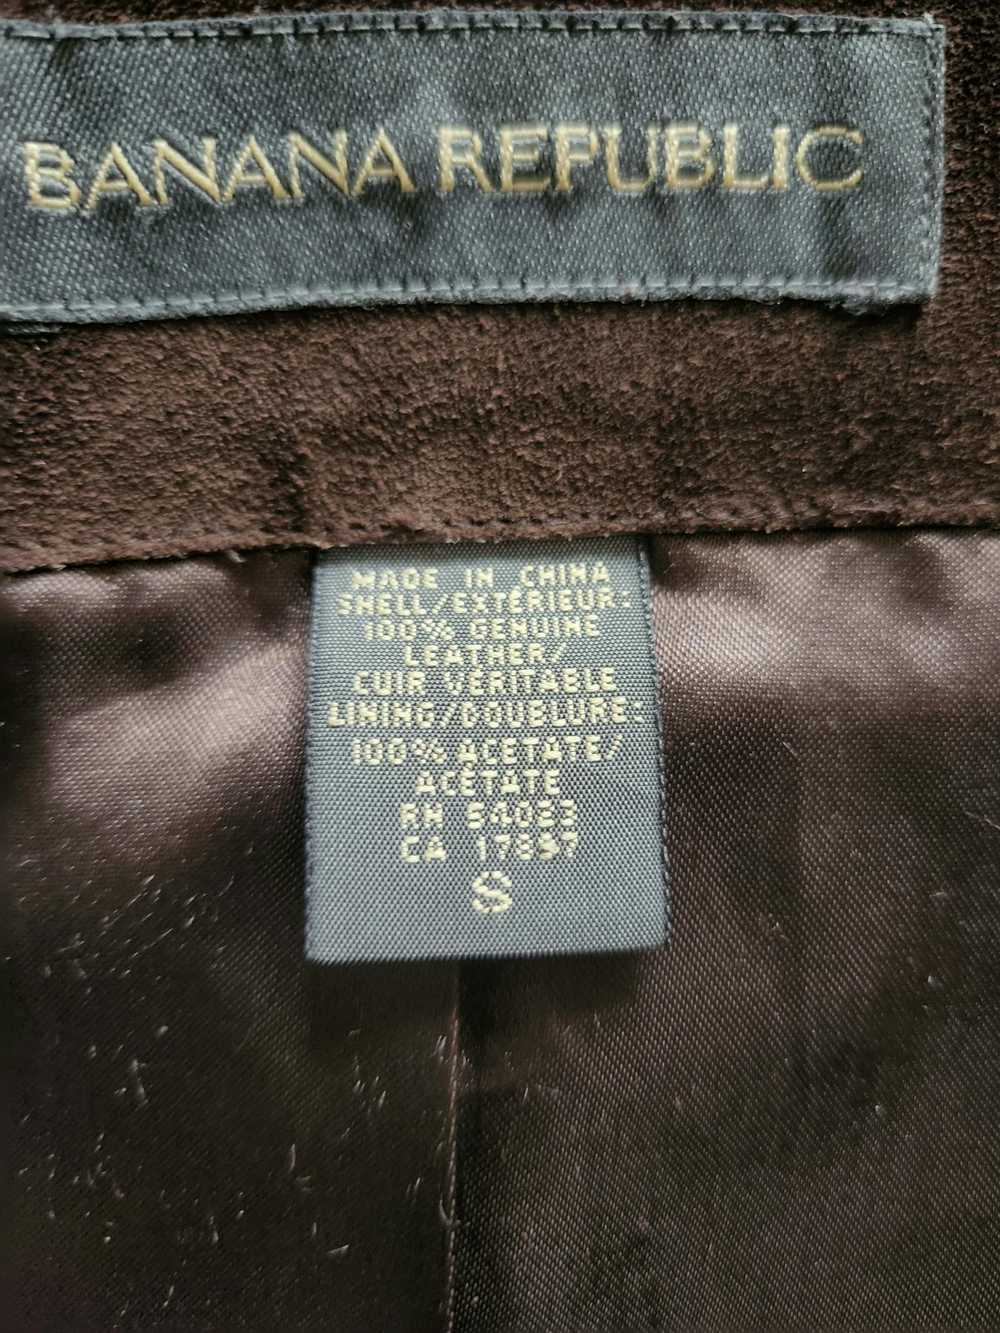 Banana Republic Chocolate suede leather jacket - image 1